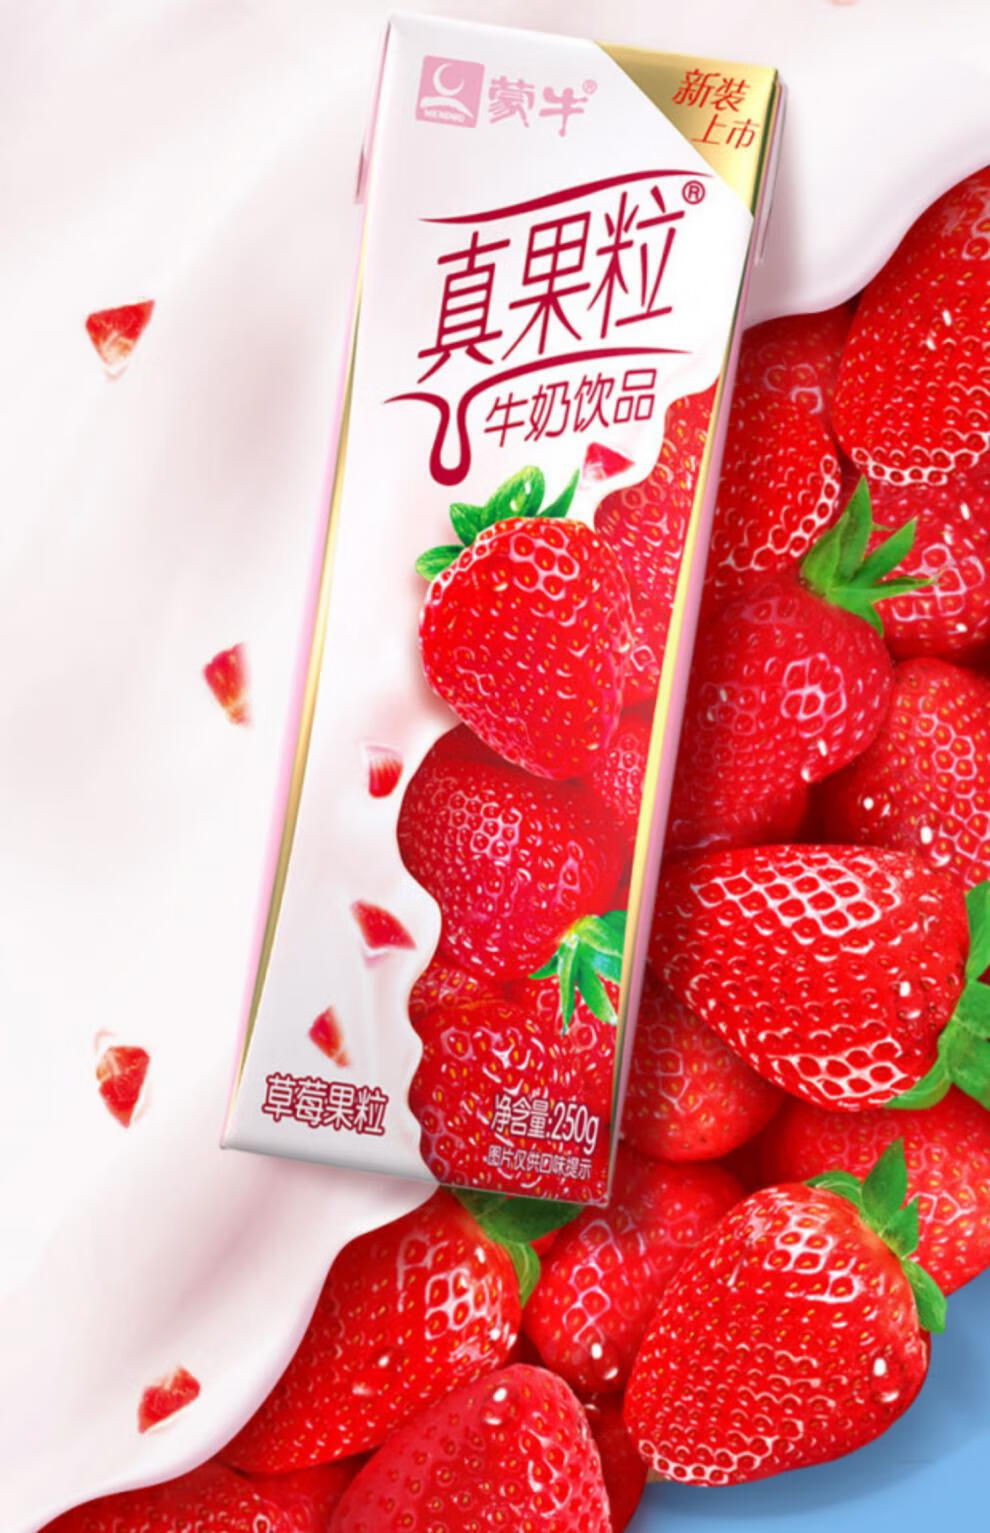 6月产蒙牛真果粒草莓蓝莓芦荟椰果黄桃味250g12盒整箱学生牛奶1月产